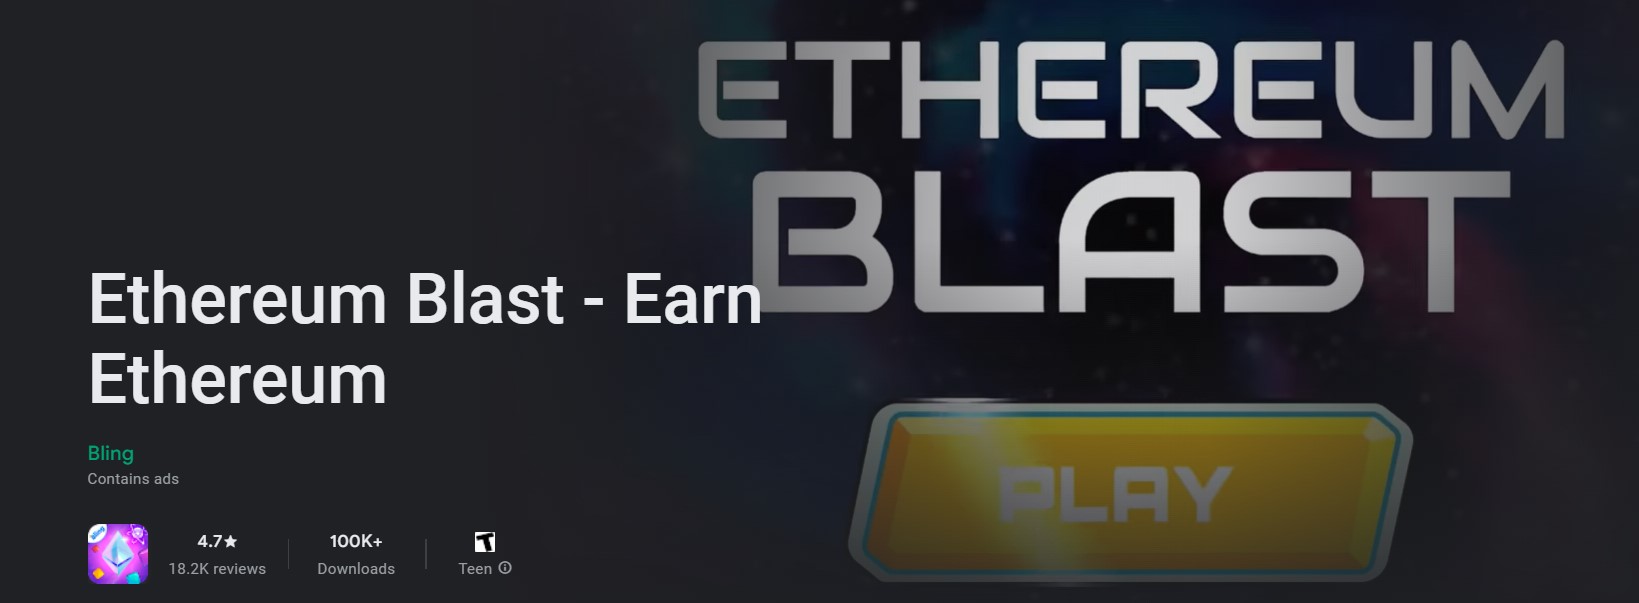 Ethereum Blast